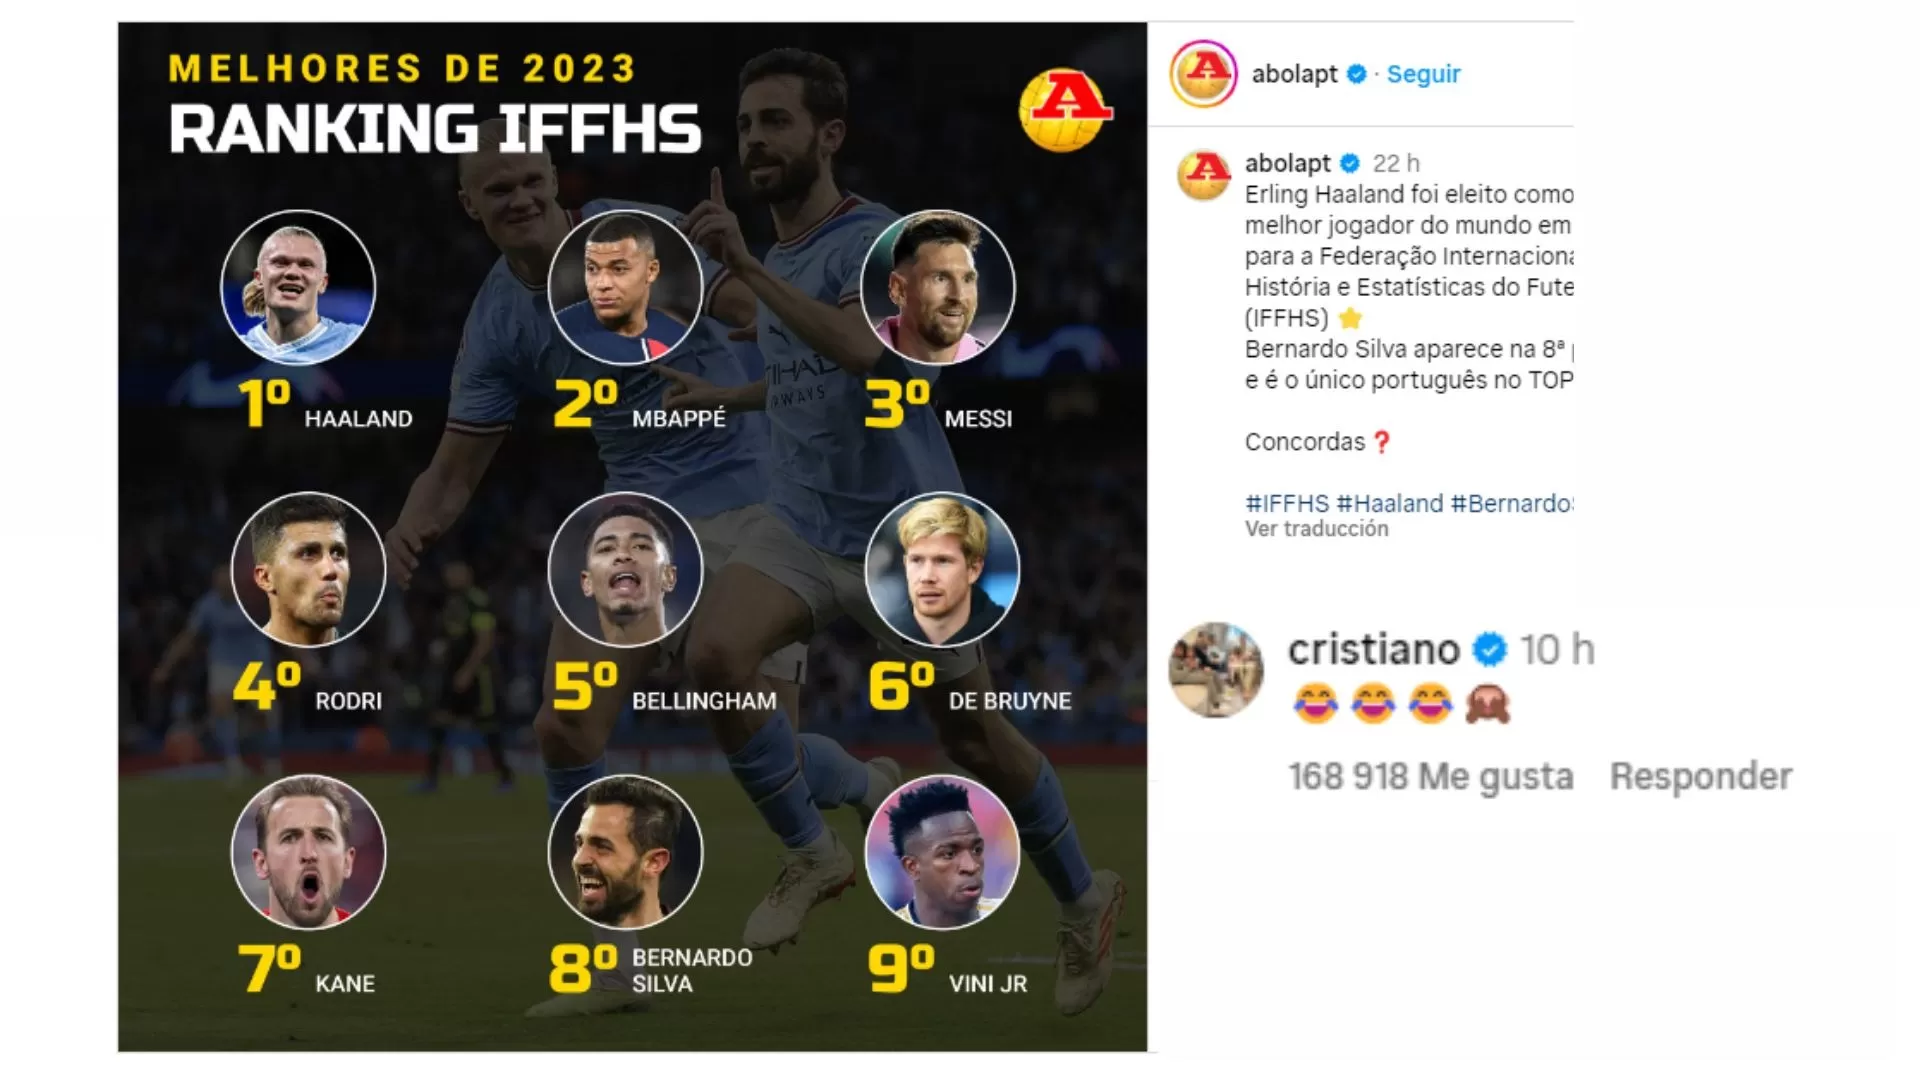 Esta fue la reacción de Cristiano Ronaldo por medio de sus redes sociales al conocerse la lista de los mejores del 2023 / Foto: Instagram